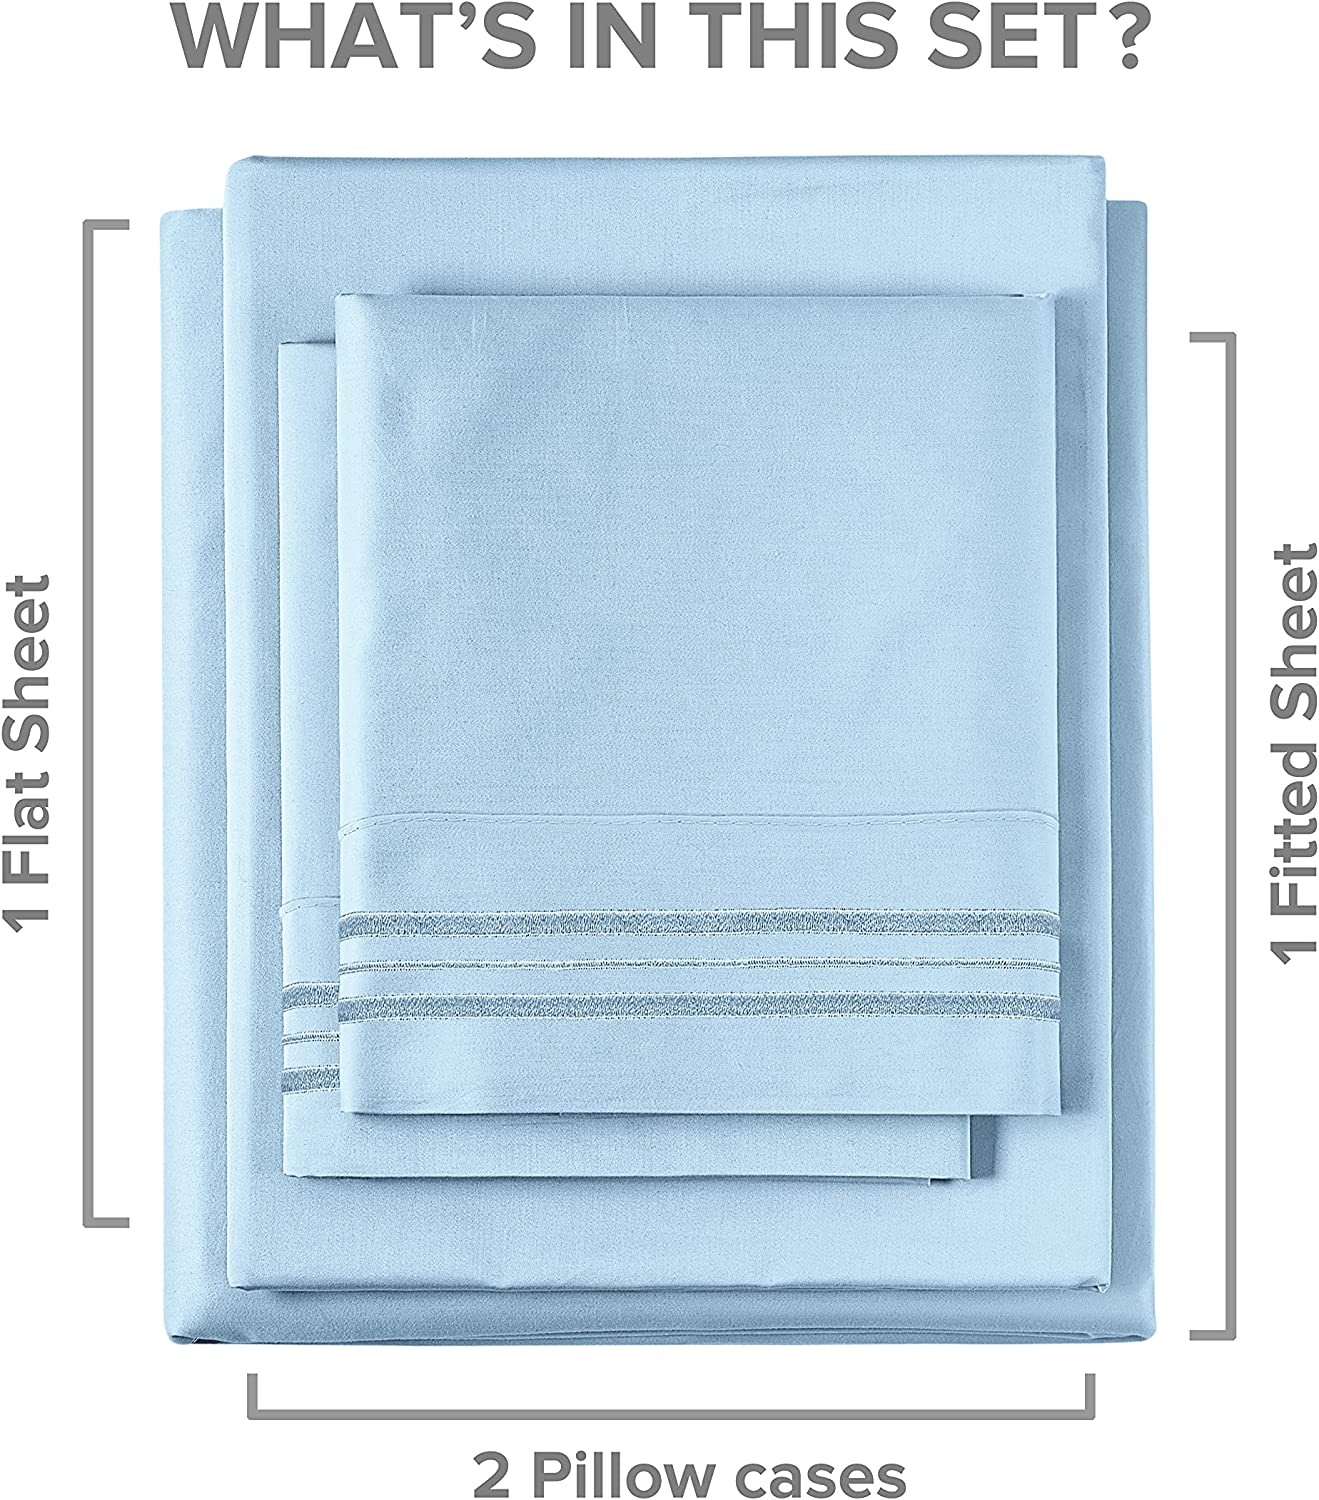 Cotton 400 Thread Count 4 Piece Deep Pocket Sheet Set - Light Blue